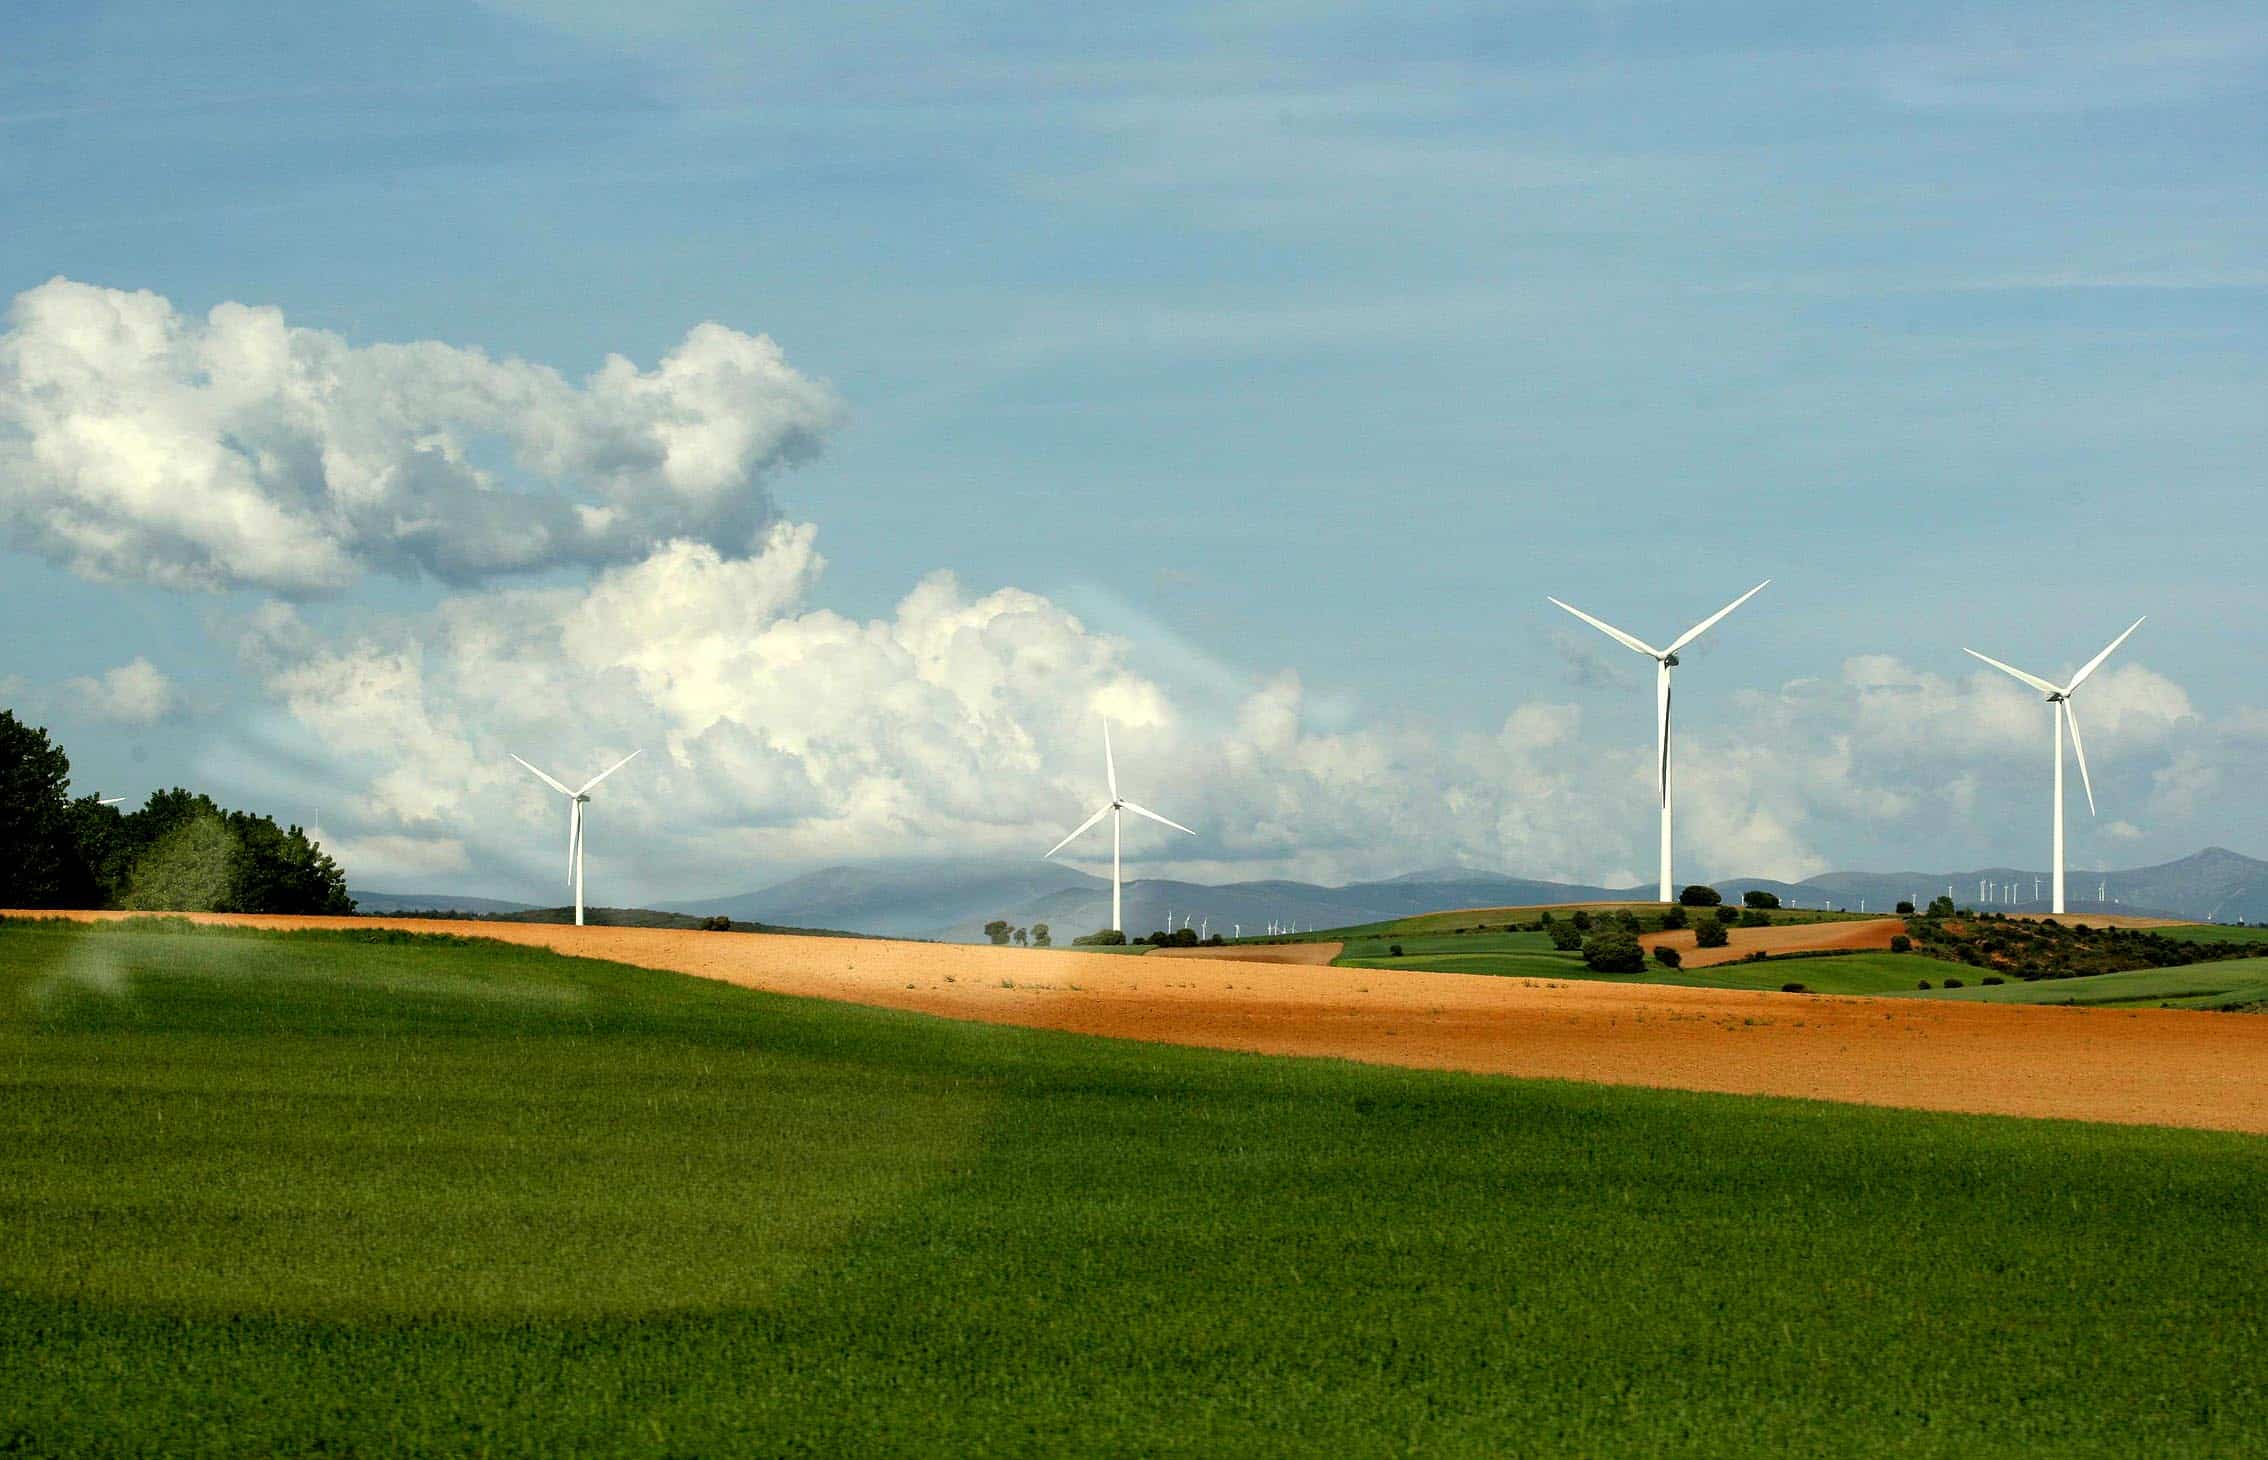 BEI, Iberdrola y Caja Rural de Soria firman un préstamo de 55 millones para un parque eólico en Burgos